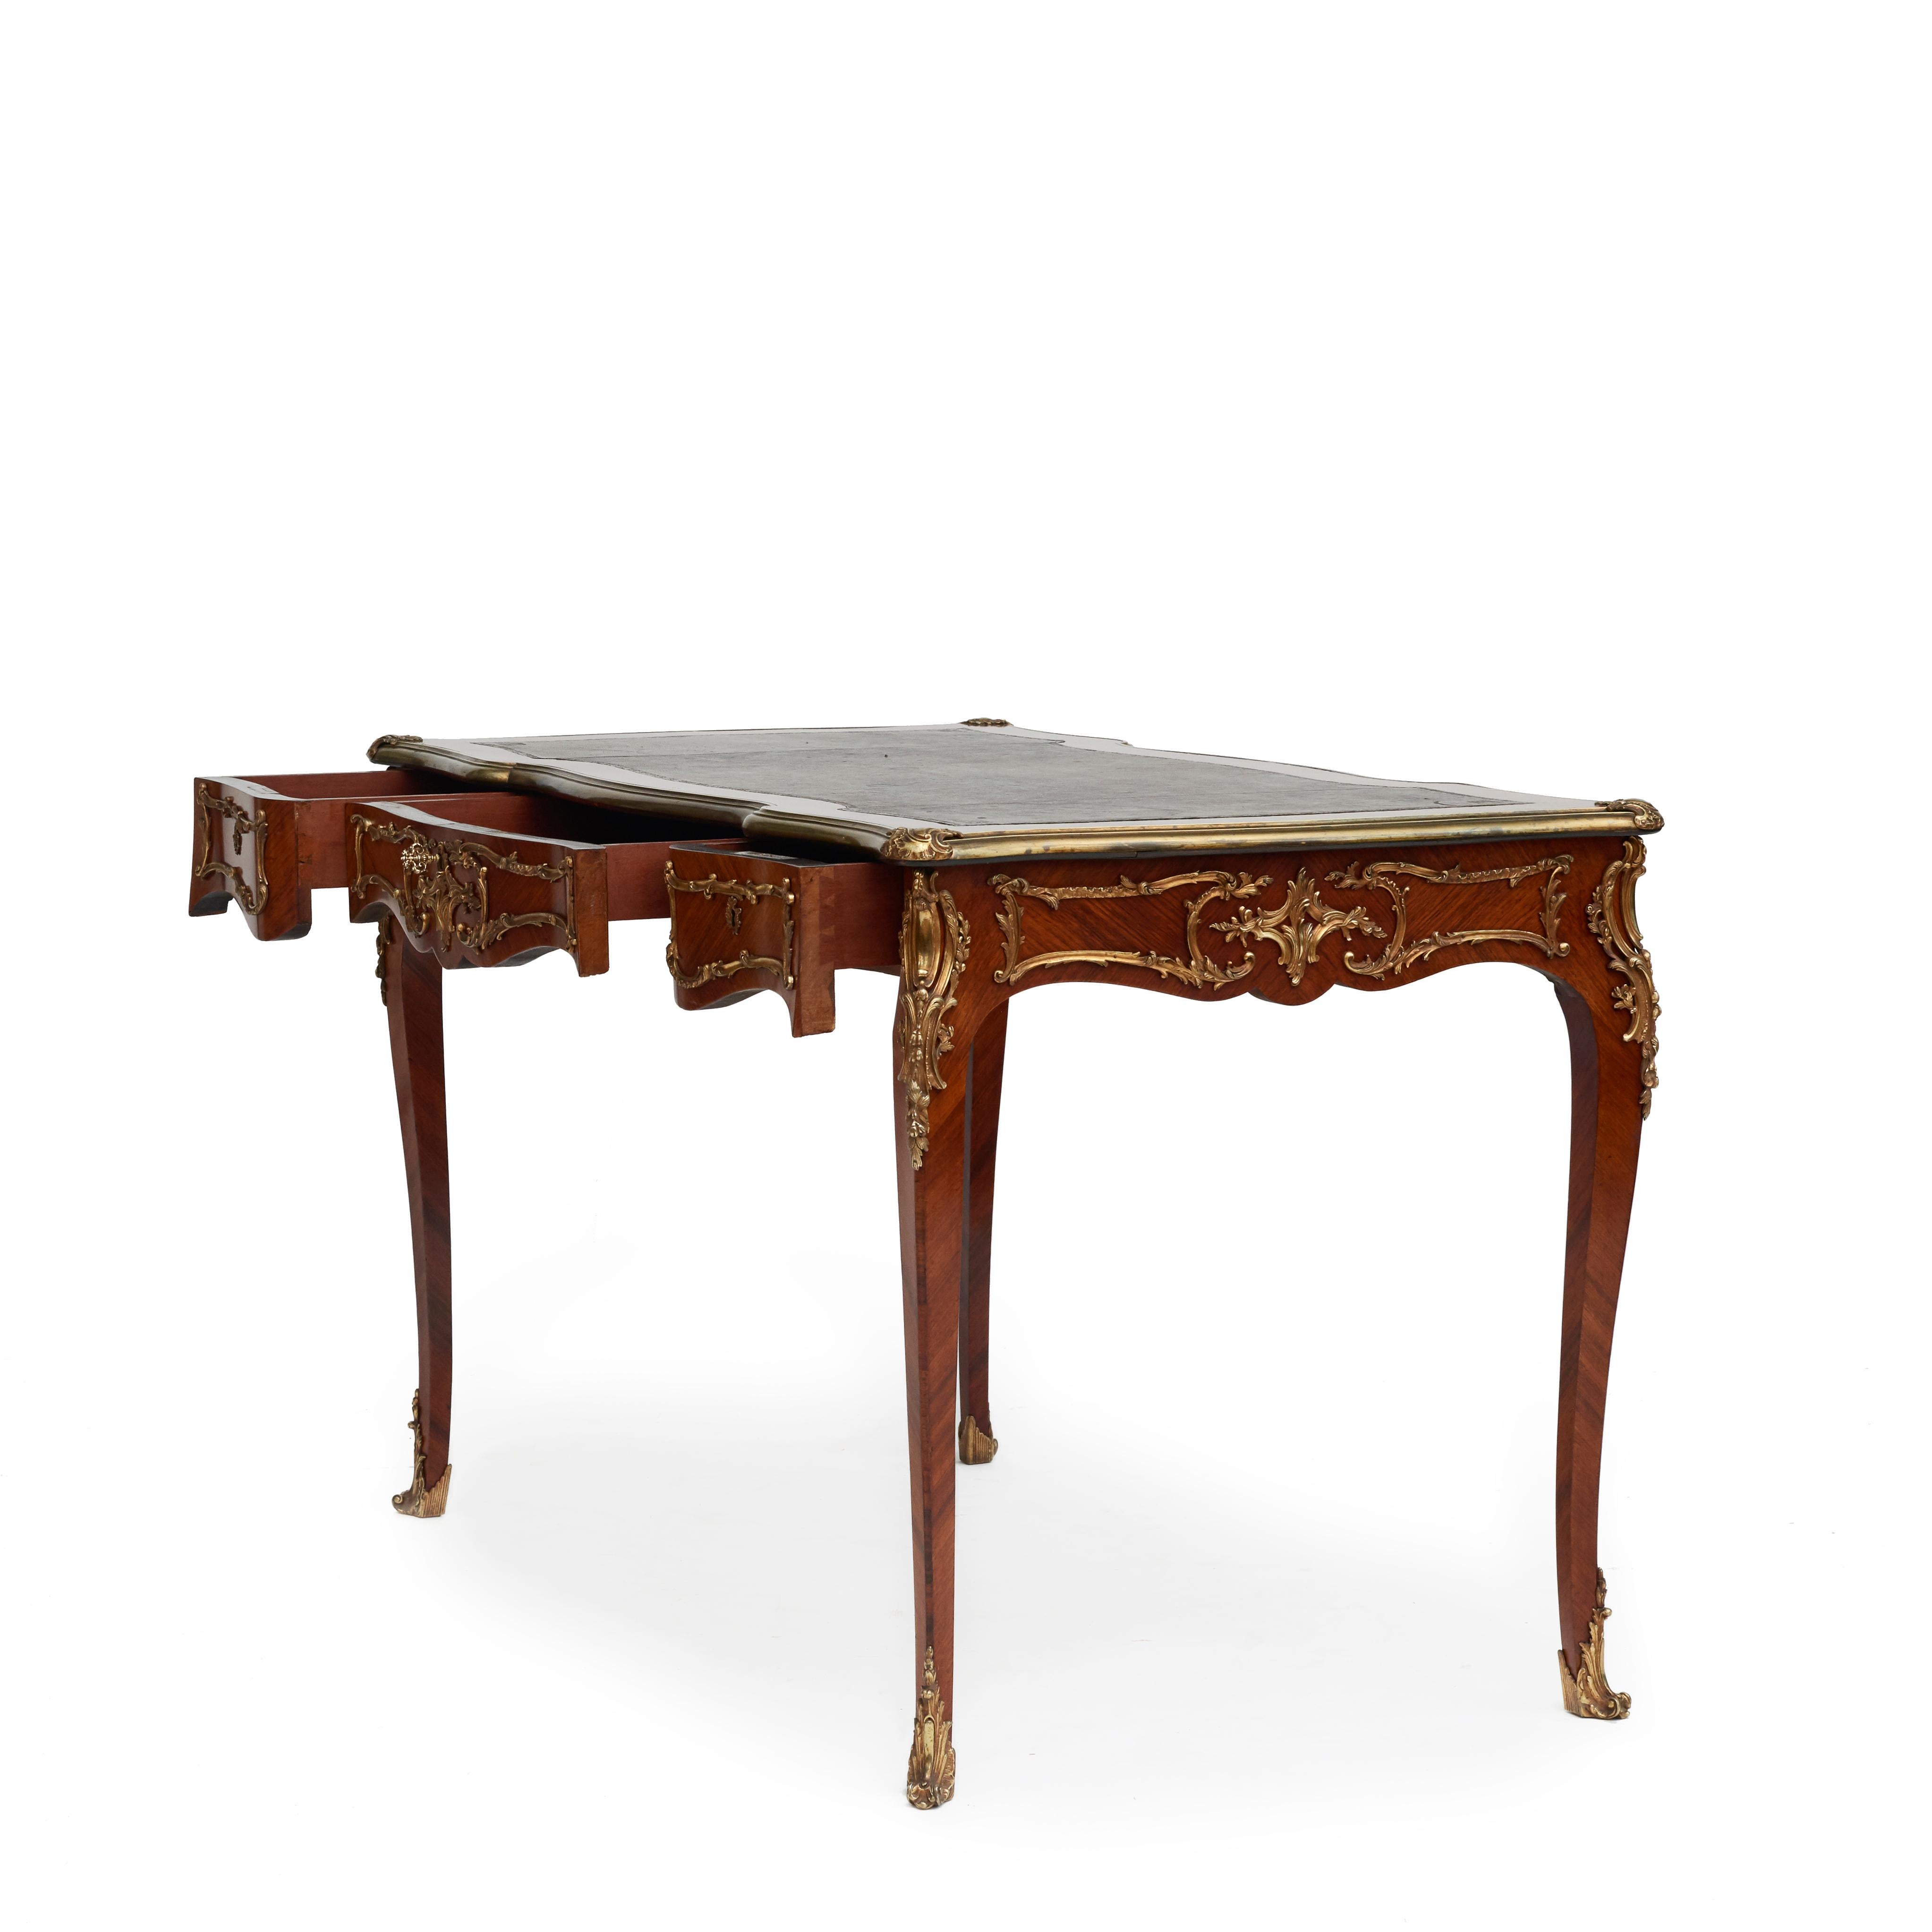 Ein eleganter französischer Schreibtisch im Rokokostil aus Nussbaum mit Ormolu-Akzenten.
Die Schreibfläche aus Leder ist mit einem Rahmen aus Nussbaumholz eingefasst, der mit einer schlangenförmigen Bronzekante und Beschlägen an den Ecken versehen